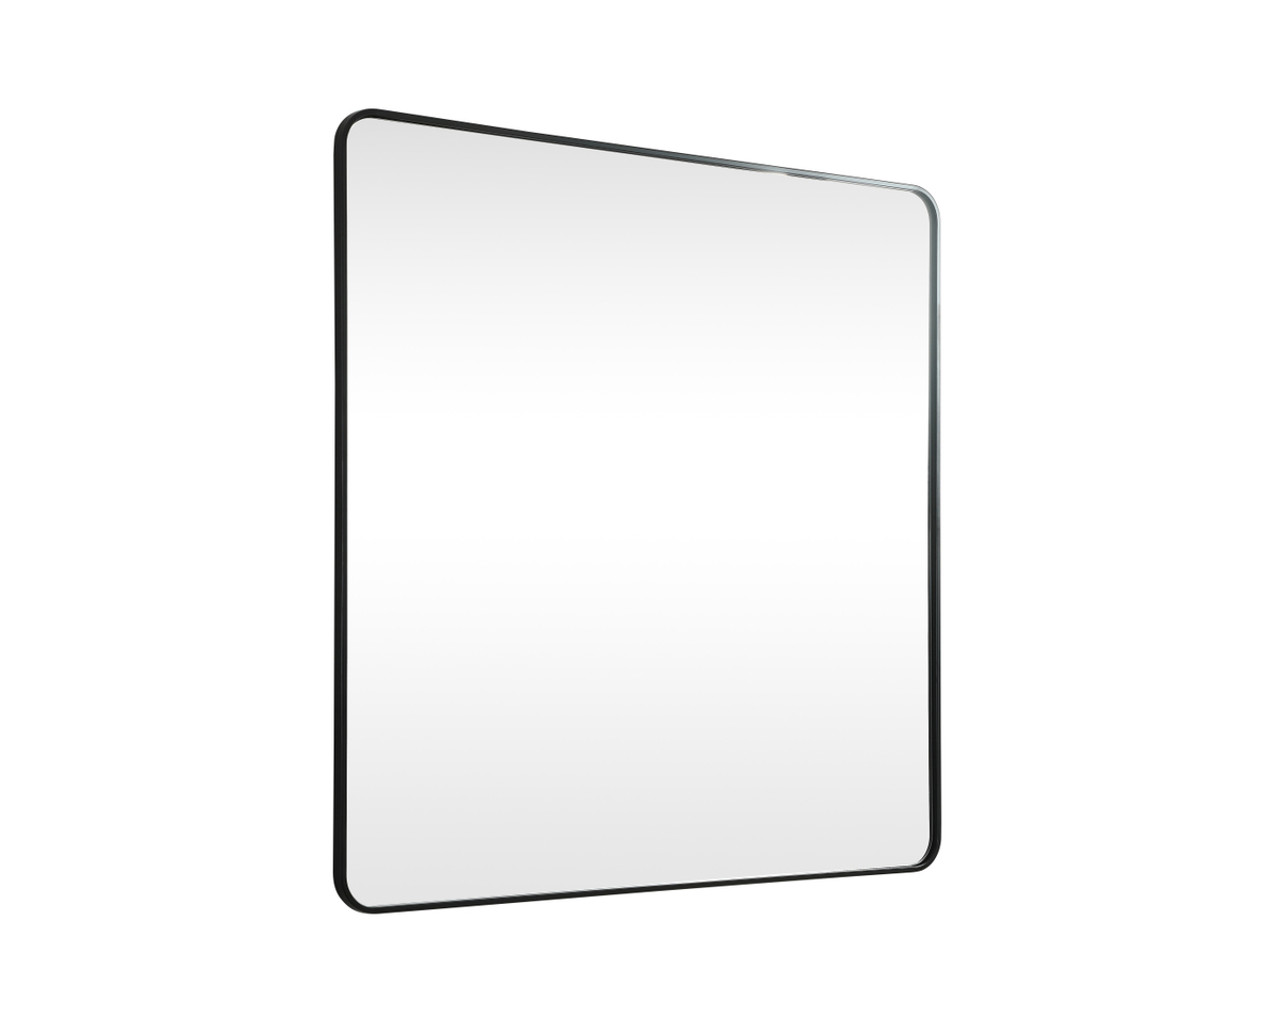 Elegant Decor MR804848BK Soft corner metal square mirror 48x48 inch in Black